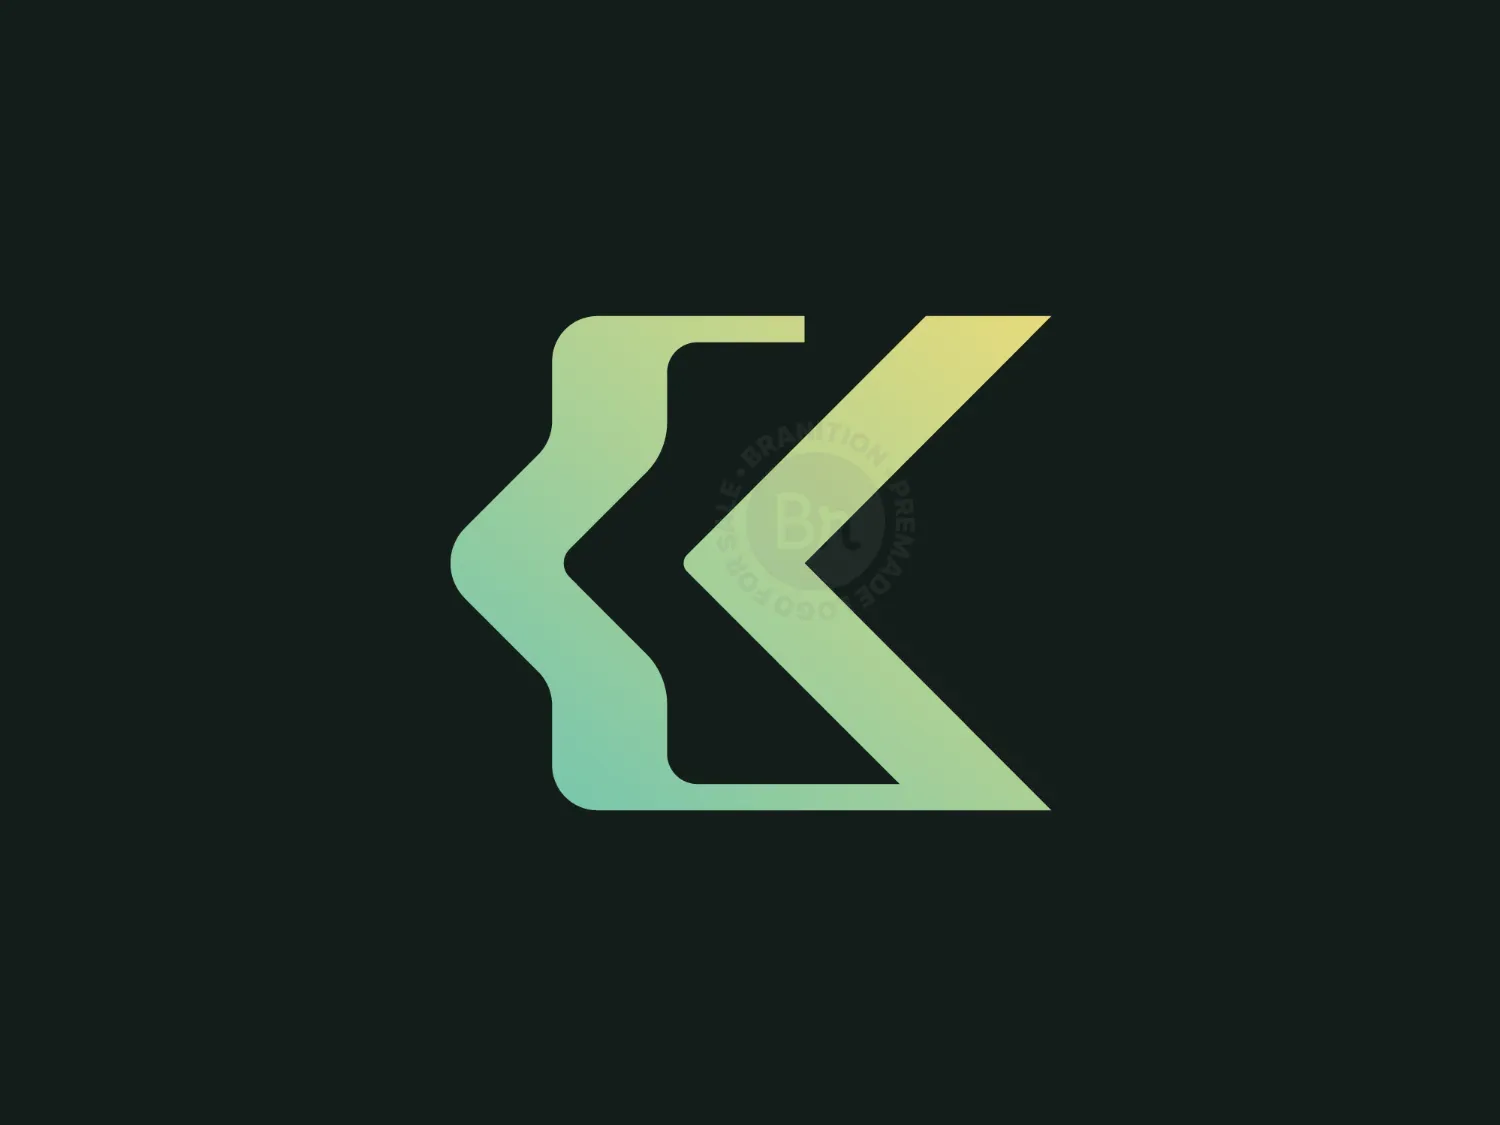 Letter K Code Logo